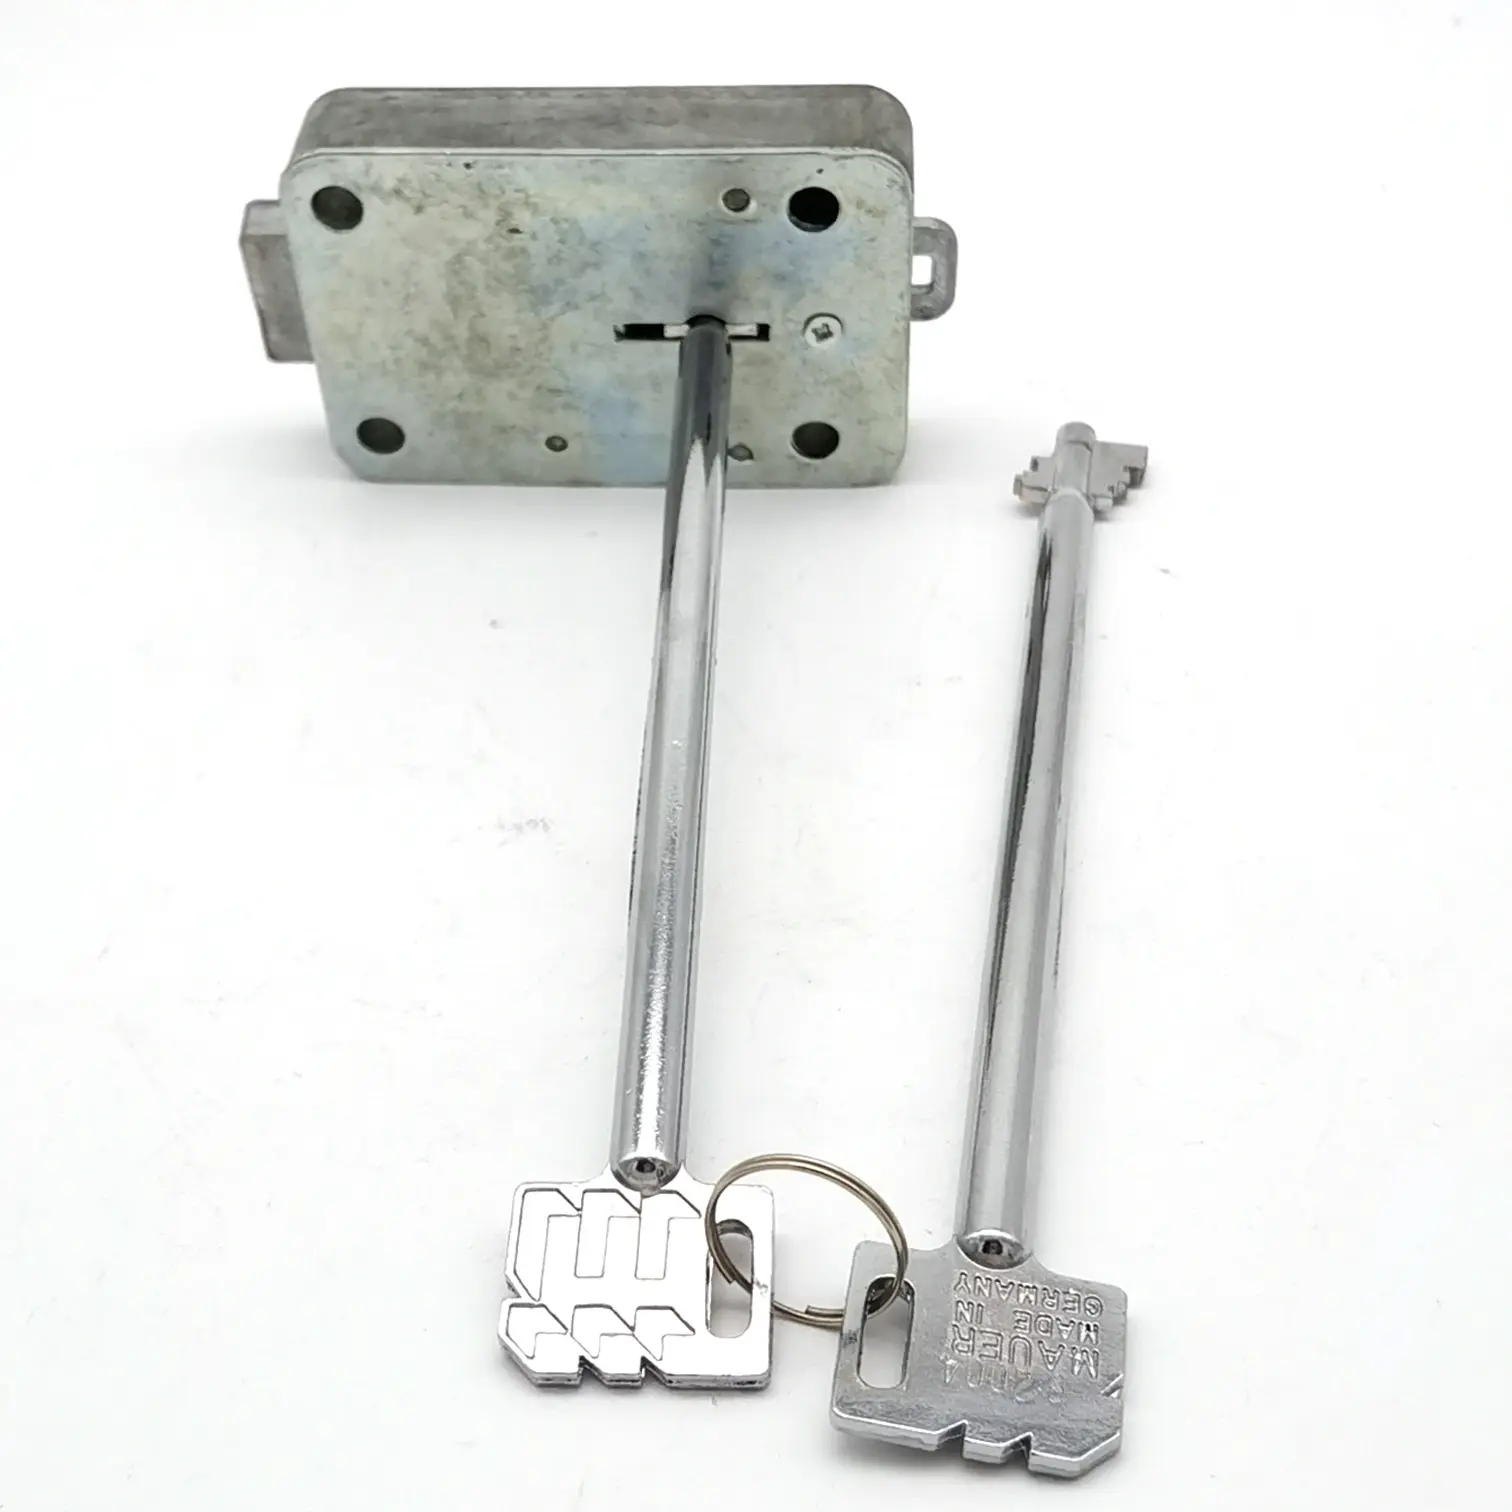 Prezzo all'ingrosso KABA 71111 VDS serratura di sicurezza meccanica con 2 chiavi 185mm